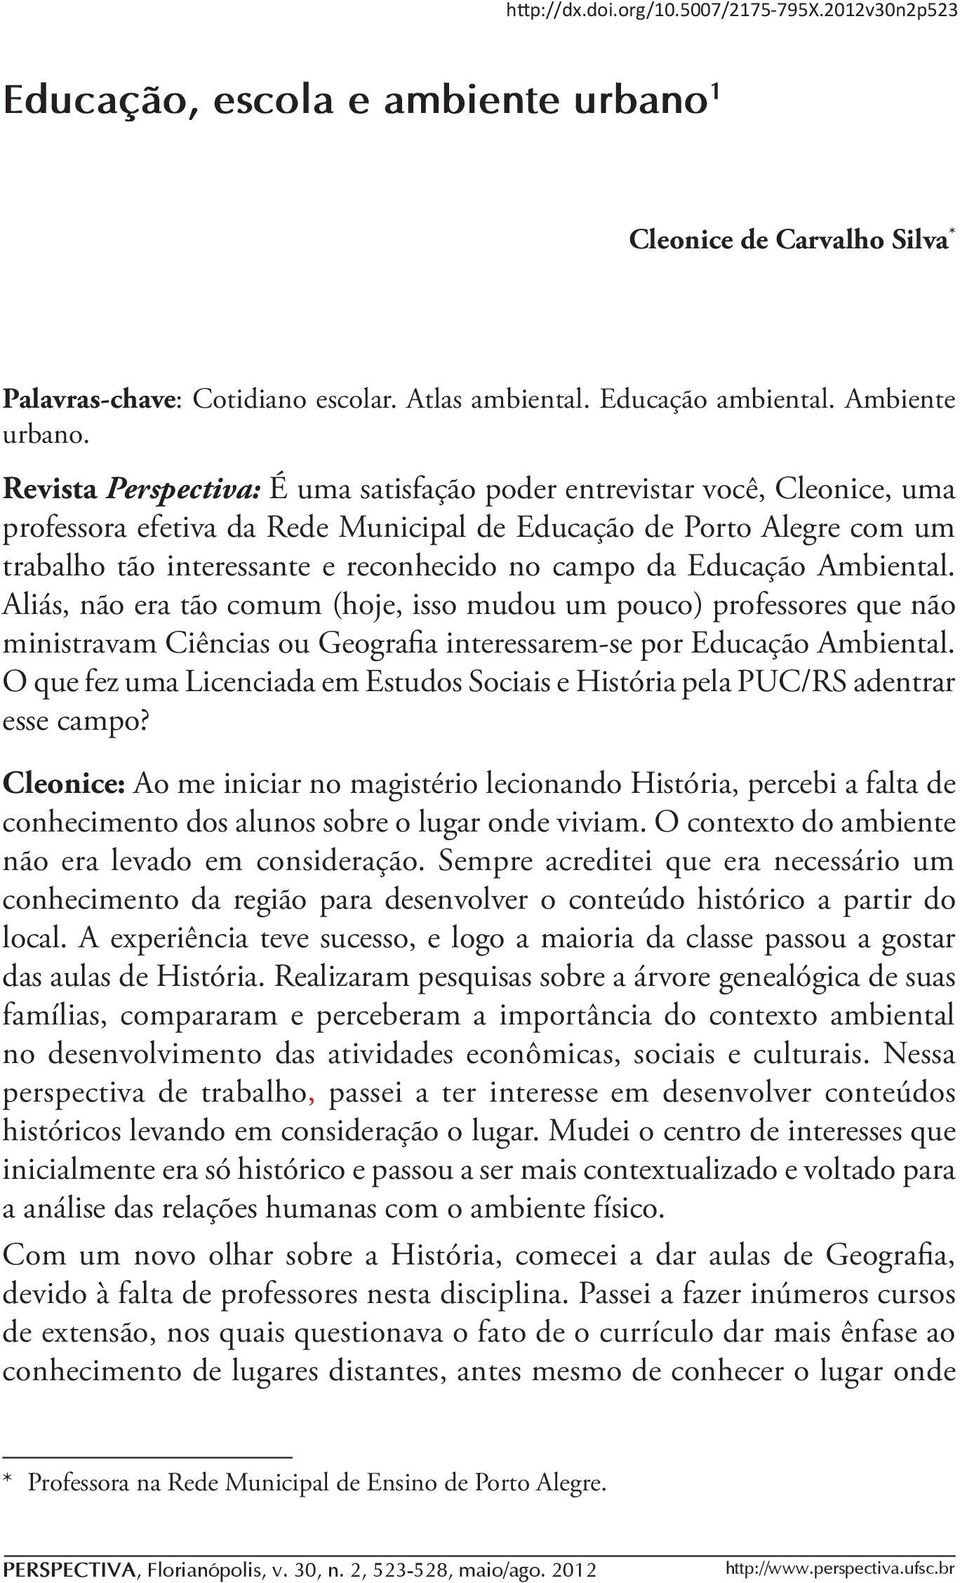 Revista Perspectiva: É uma satisfação poder entrevistar você, Cleonice, uma professora efetiva da Rede Municipal de Educação de Porto Alegre com um trabalho tão interessante e reconhecido no campo da